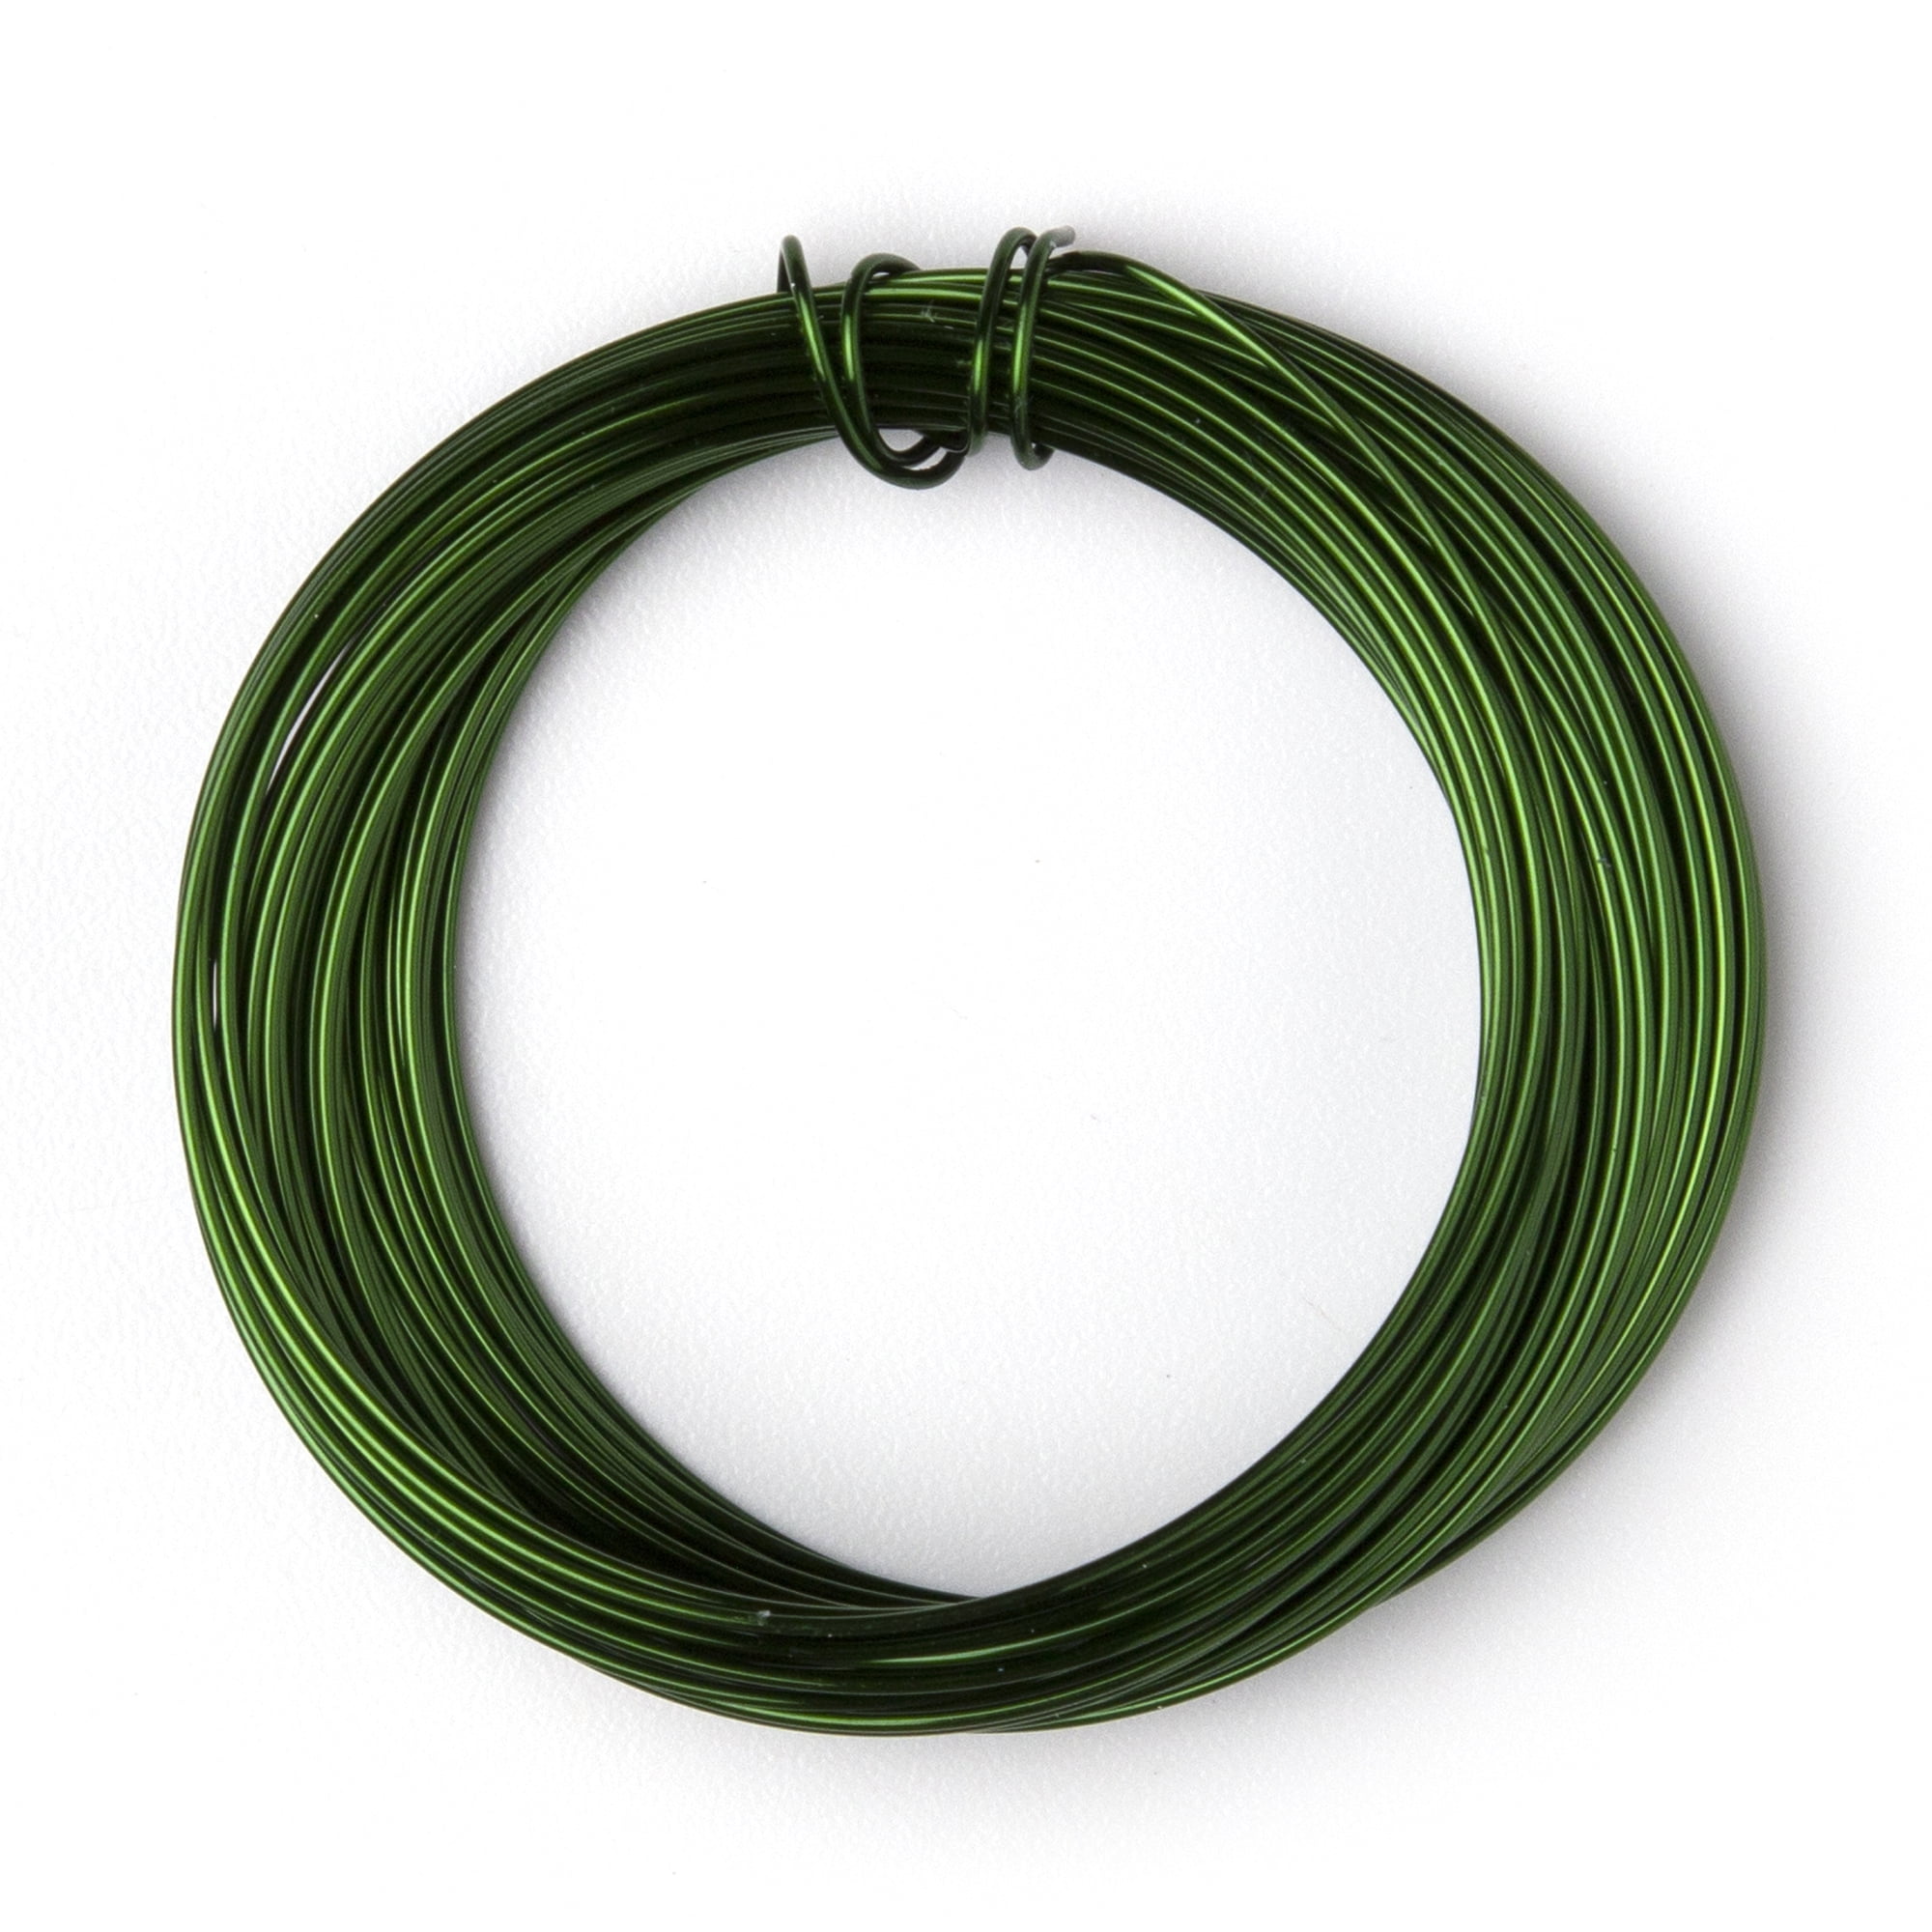 GREENARTZ 20 Gauge Copper Wire Price in India - Buy GREENARTZ 20 Gauge  Copper Wire online at